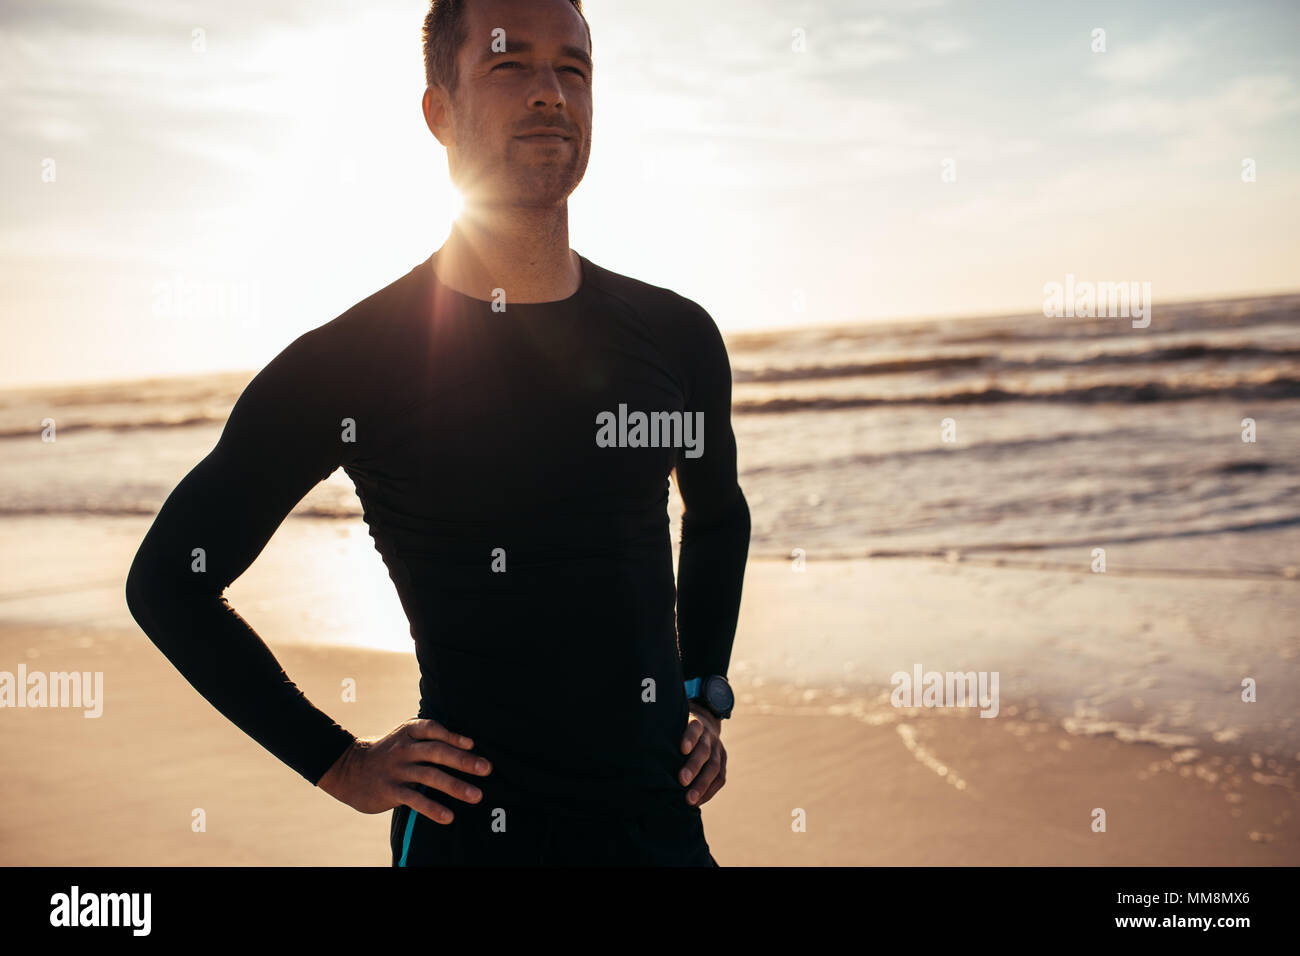 Ritratto di fiducioso atleta maschio permanente sulla spiaggia. Uomo in abbigliamento sportivo lungo la riva del mare in mattina. Foto Stock